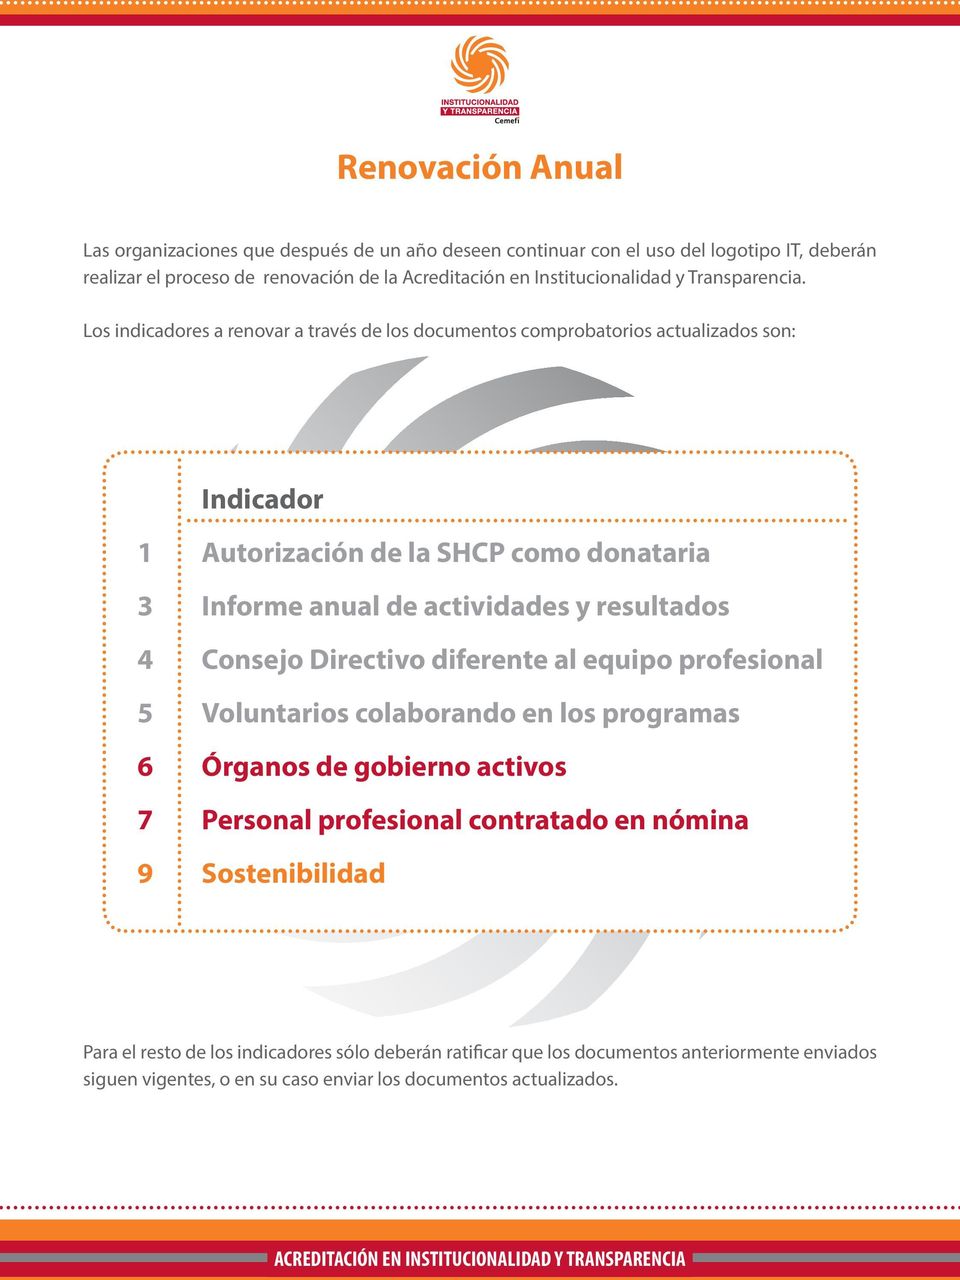 Los indicadores a renovar a través de los documentos comprobatorios actualizados son: Indicador 1 Autorización de la SHCP como donataria 3 Informe anual de actividades y resultados 4